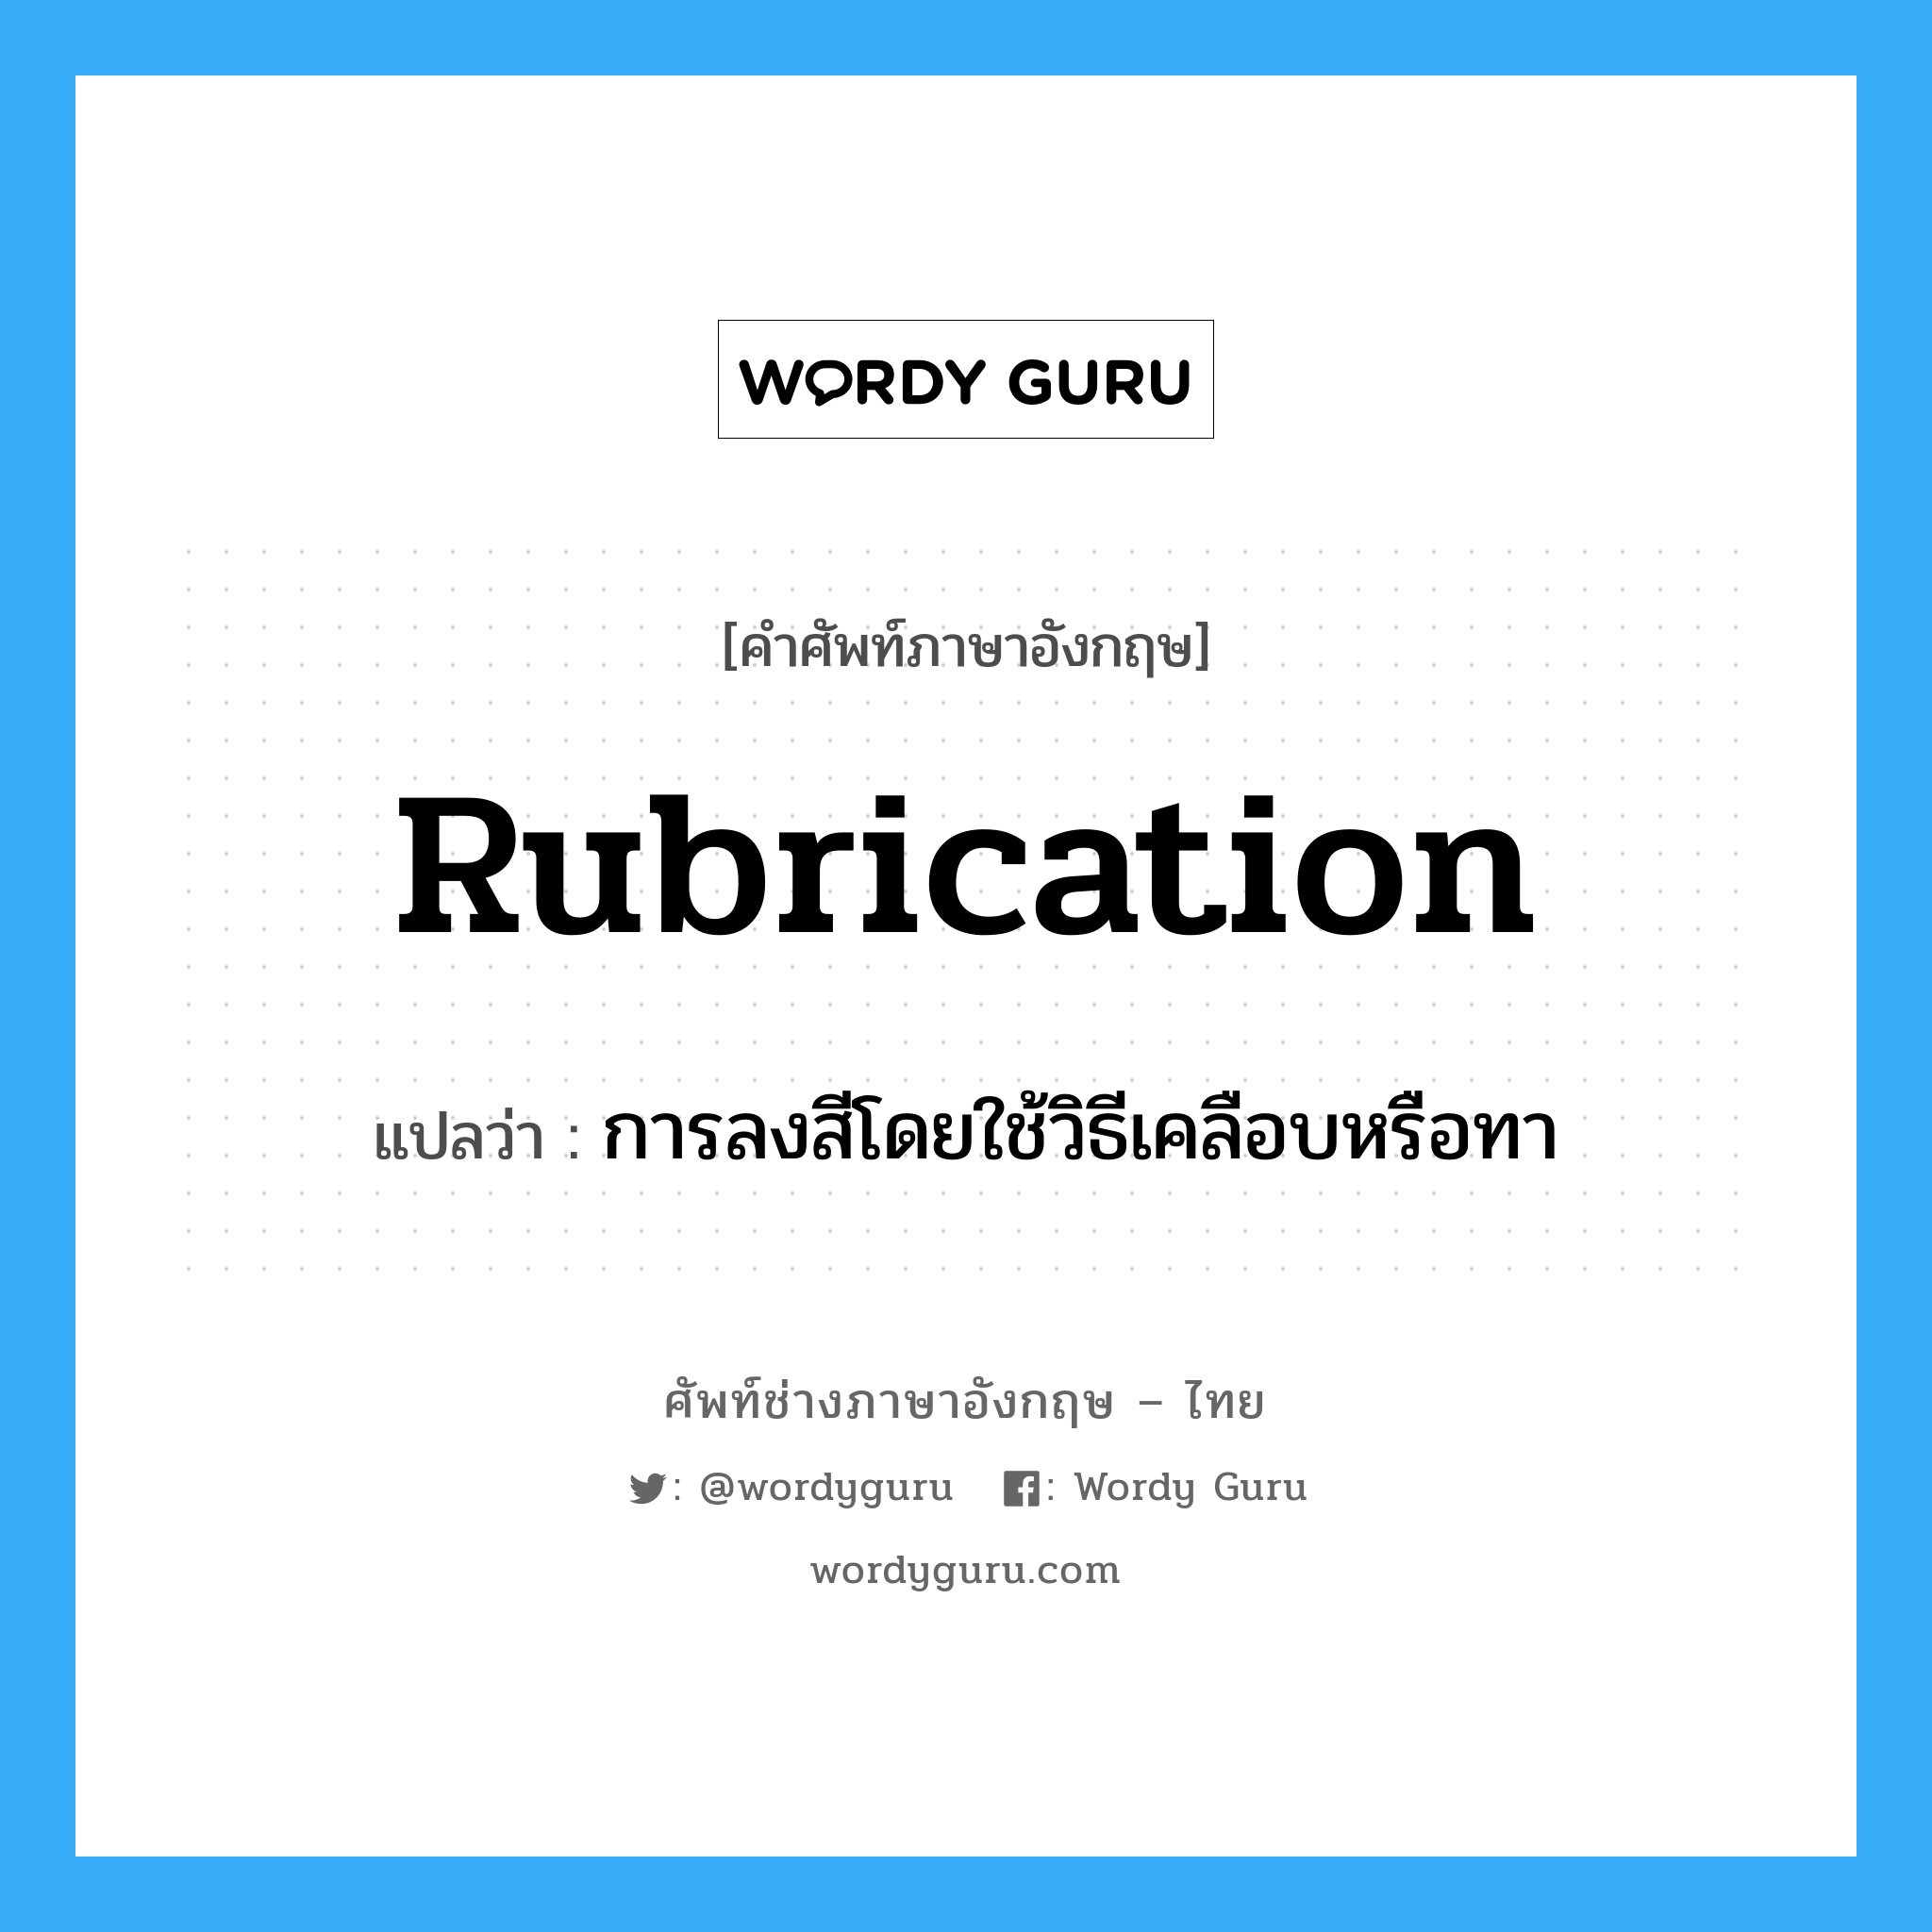 rubrication แปลว่า?, คำศัพท์ช่างภาษาอังกฤษ - ไทย rubrication คำศัพท์ภาษาอังกฤษ rubrication แปลว่า การลงสีโดยใช้วิธีเคลือบหรือทา